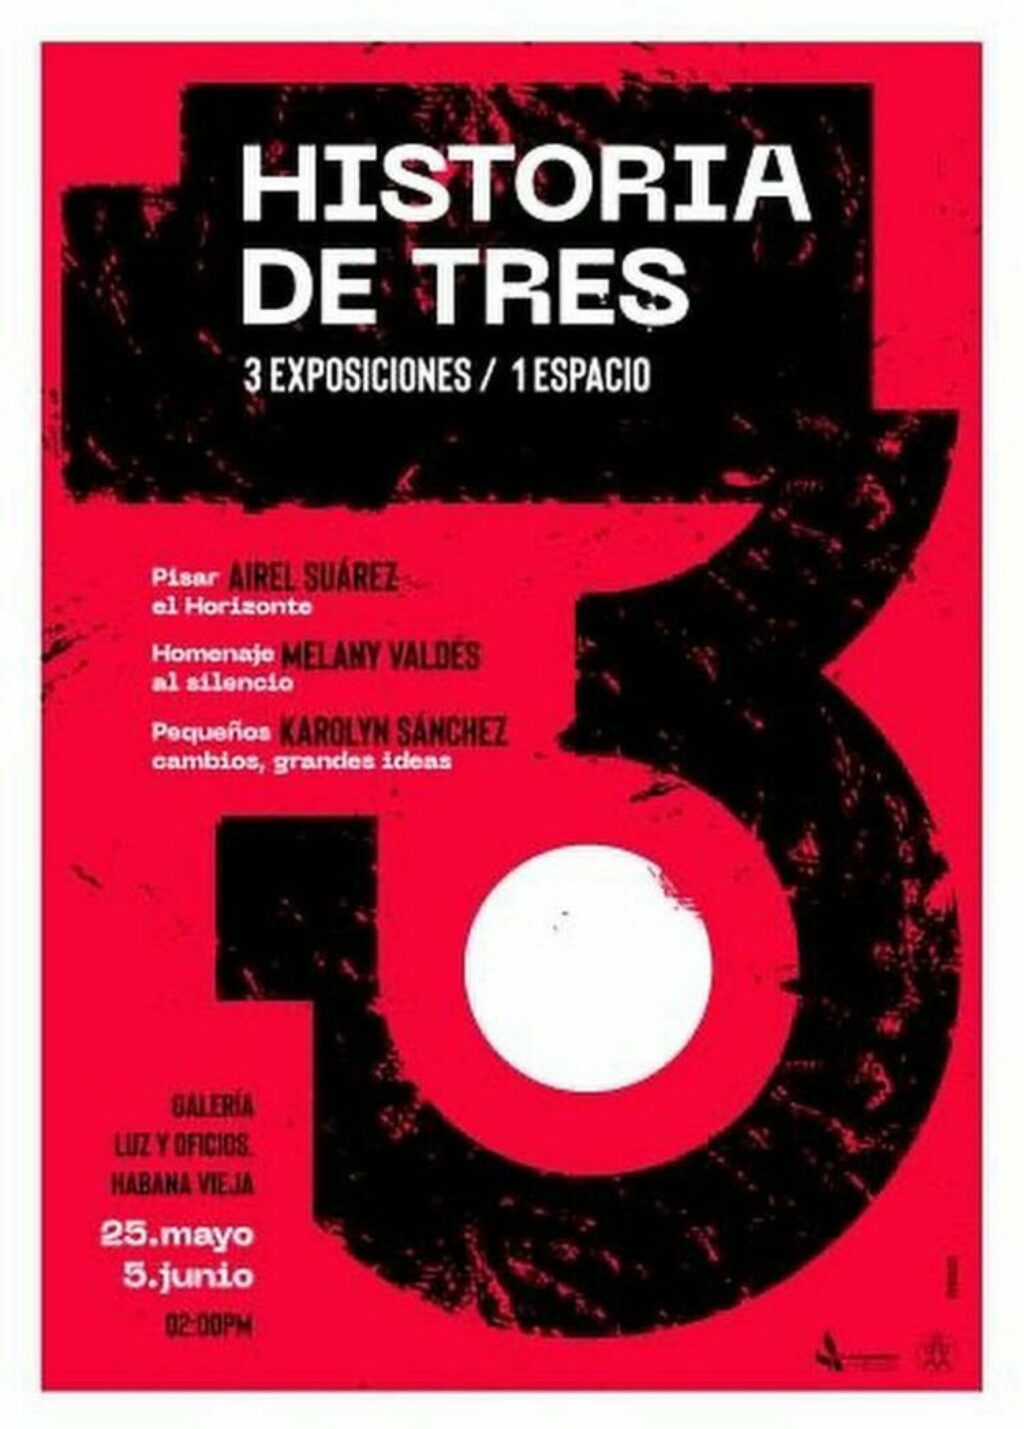 Cartel de la poli-exposición "Historia de tres".